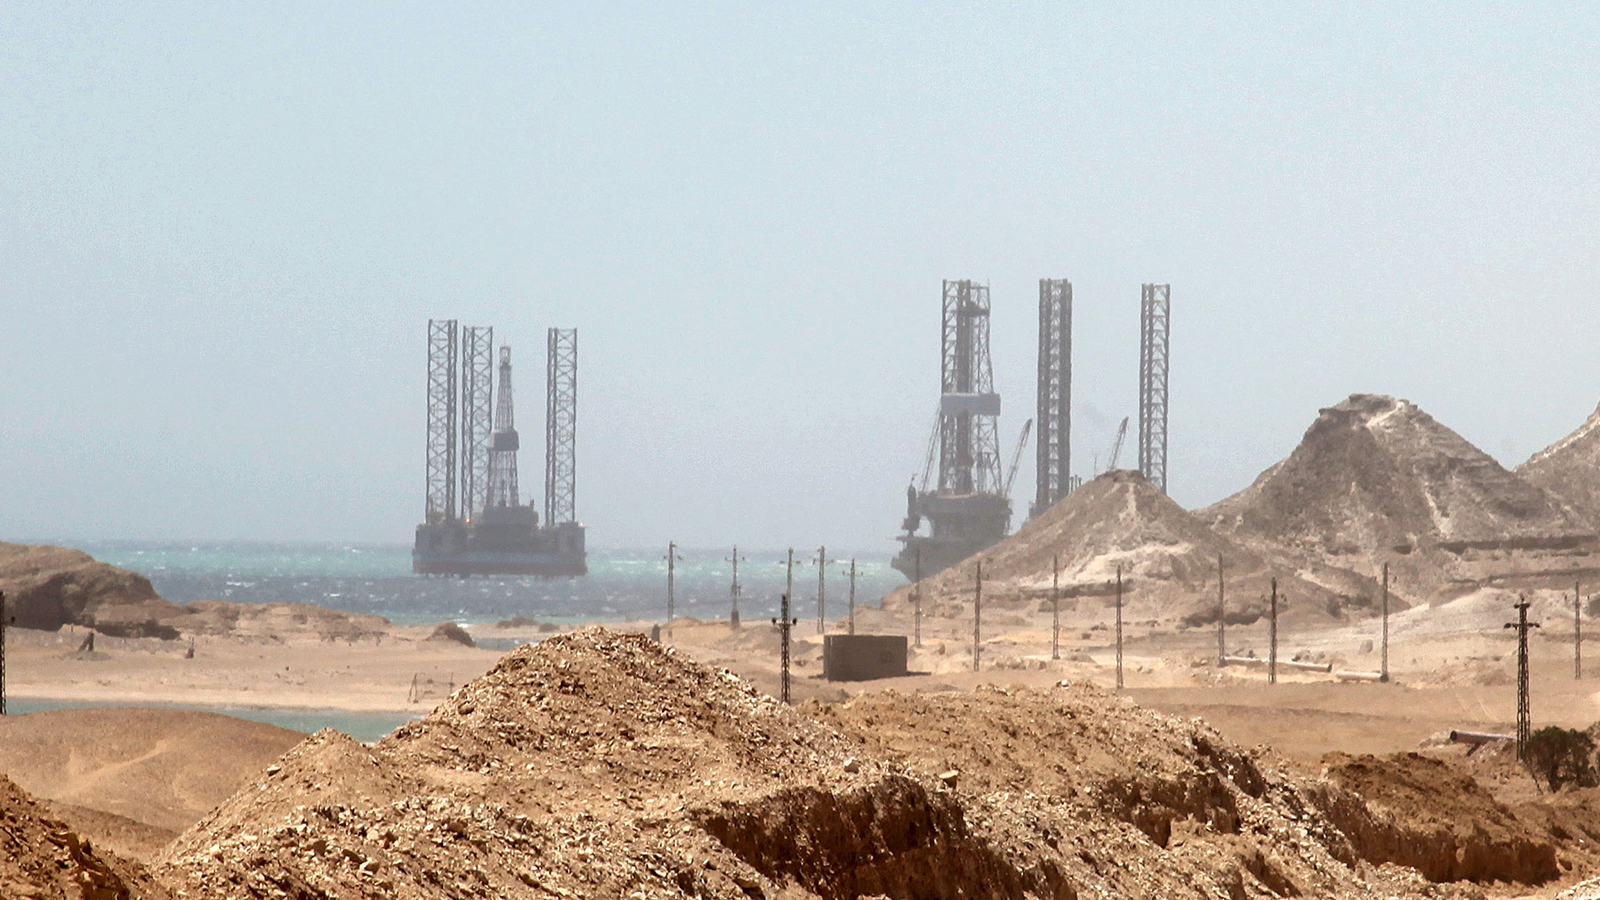 ‪منصات للتنقيب عن الطاقة في مياه مصر قرب منطقة أبو زنيمة في شبه جزيرة سيناء‬ (الأوروبية)